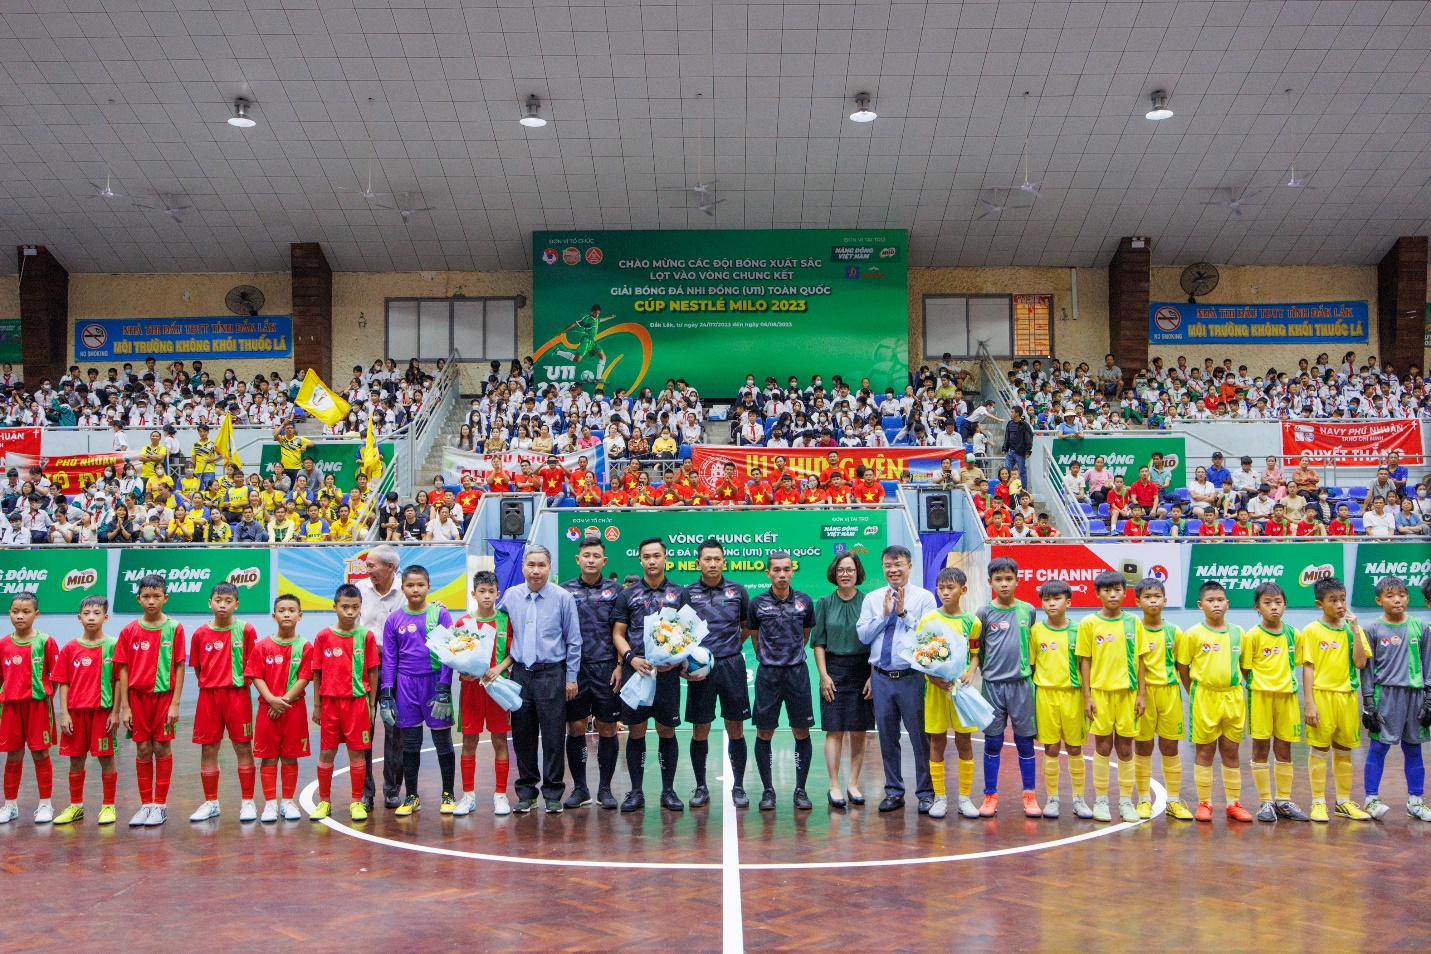 Bế mạc Giải bóng đá Nhi đồng (U11) toàn quốc, Nestlé MILO trao tặng 16 học bổng Có chí thì nên - Ảnh 1.